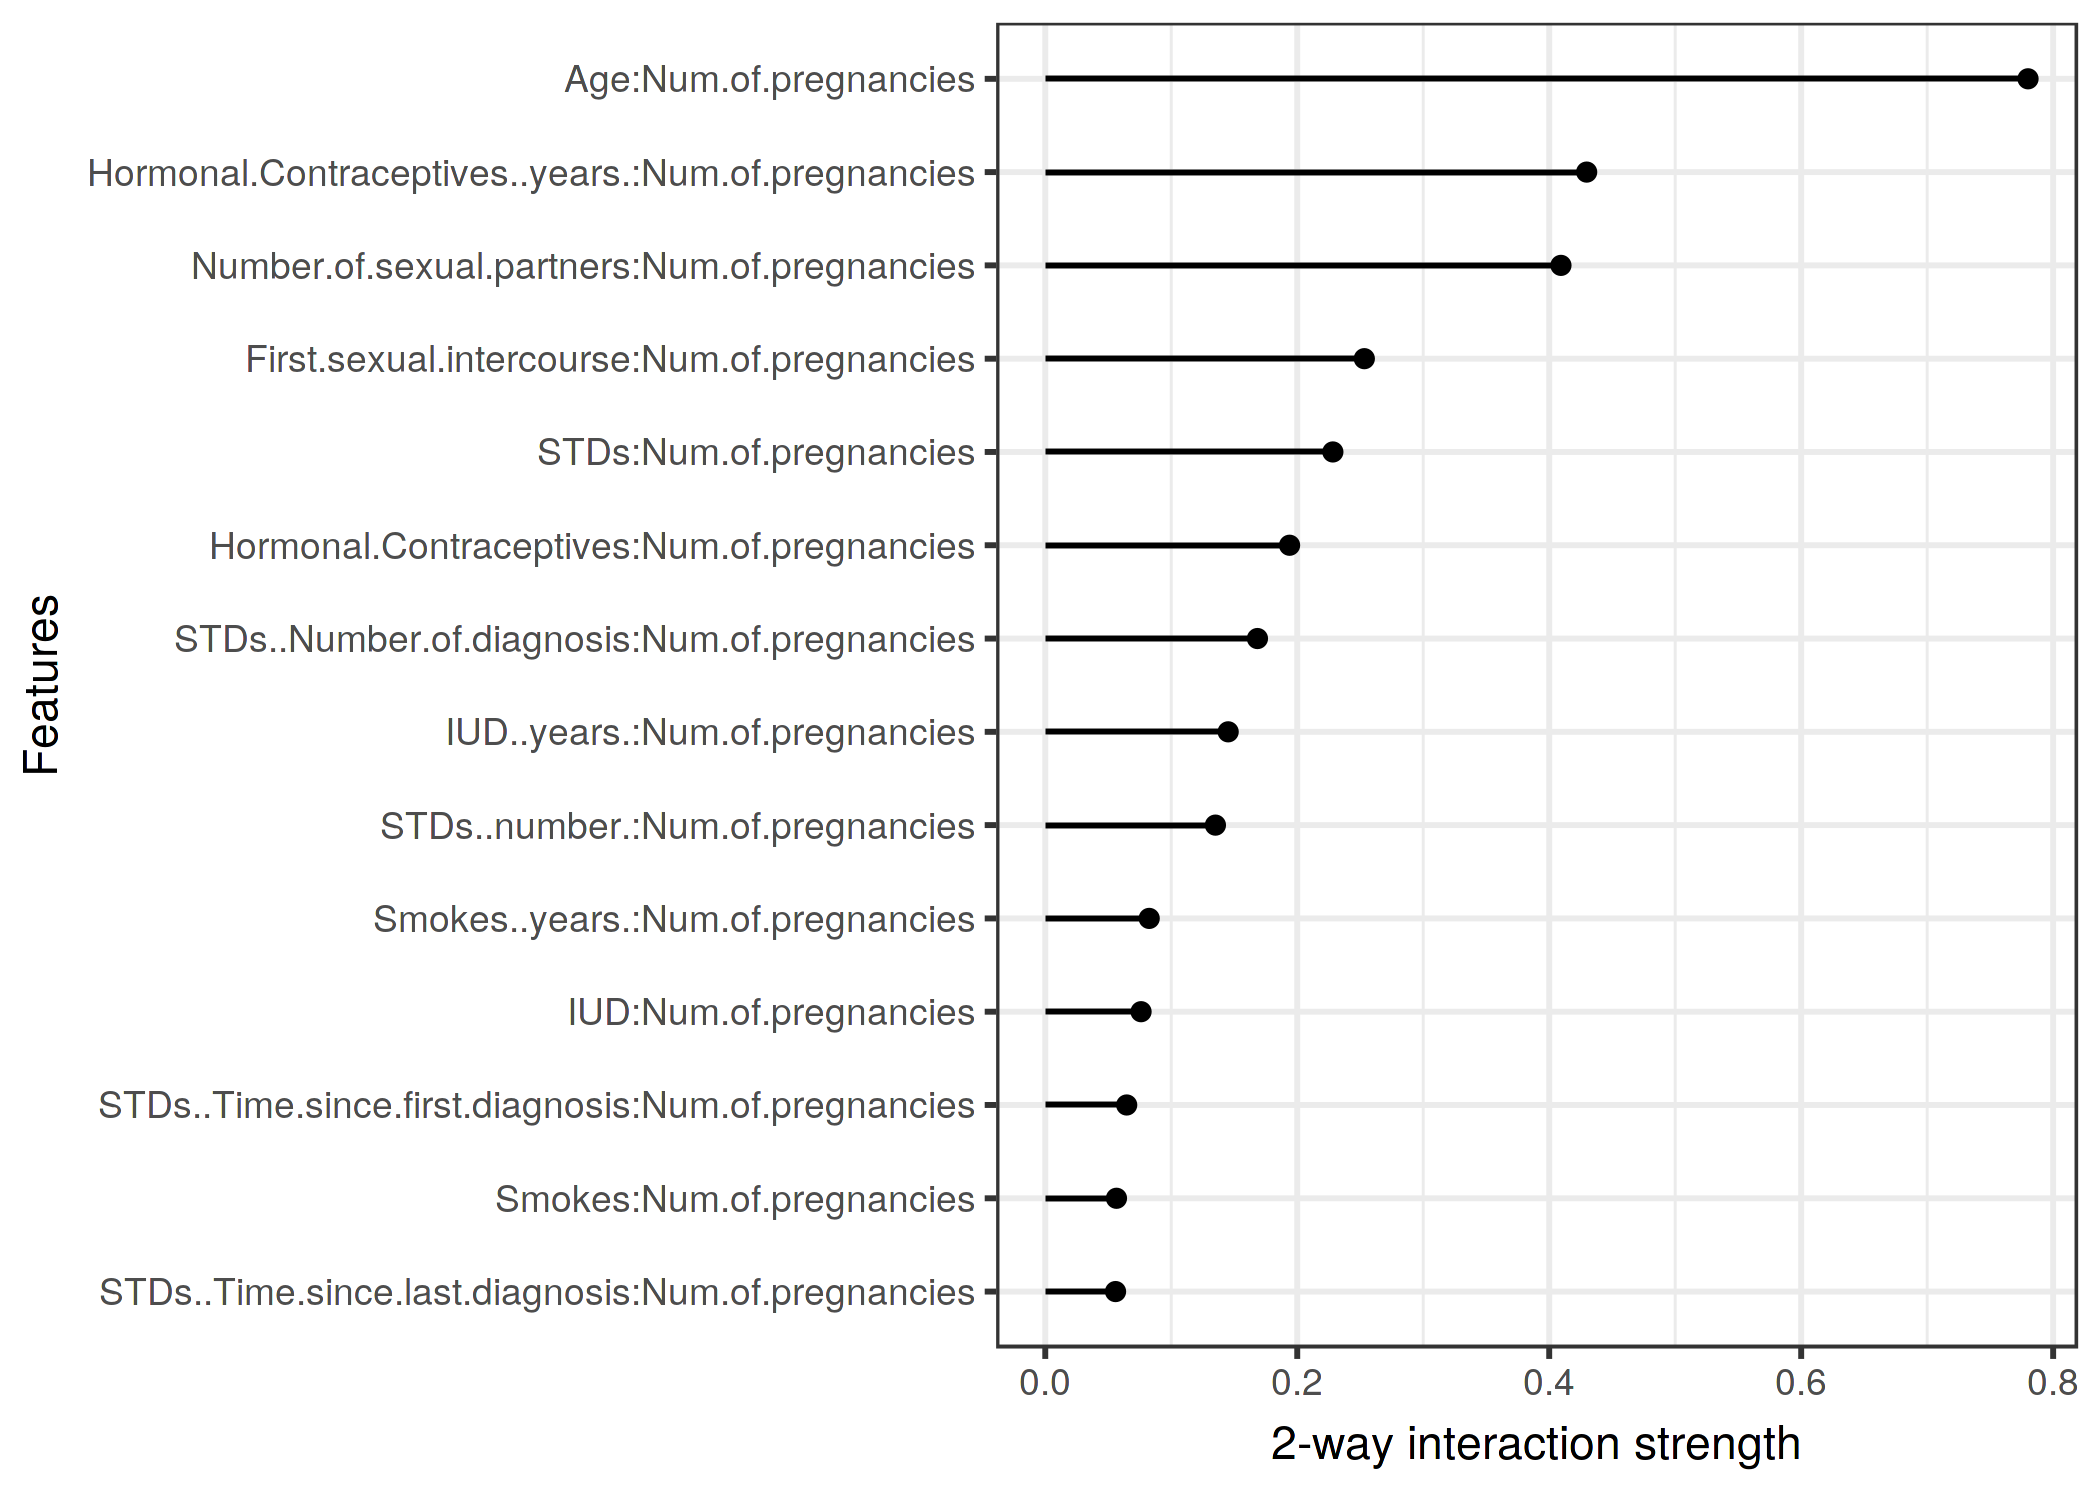 妊娠回数と他の特徴量における双方向的な相互作用の強さ（H統計量）。妊娠回数と年齢に強い相互作用が認められる。